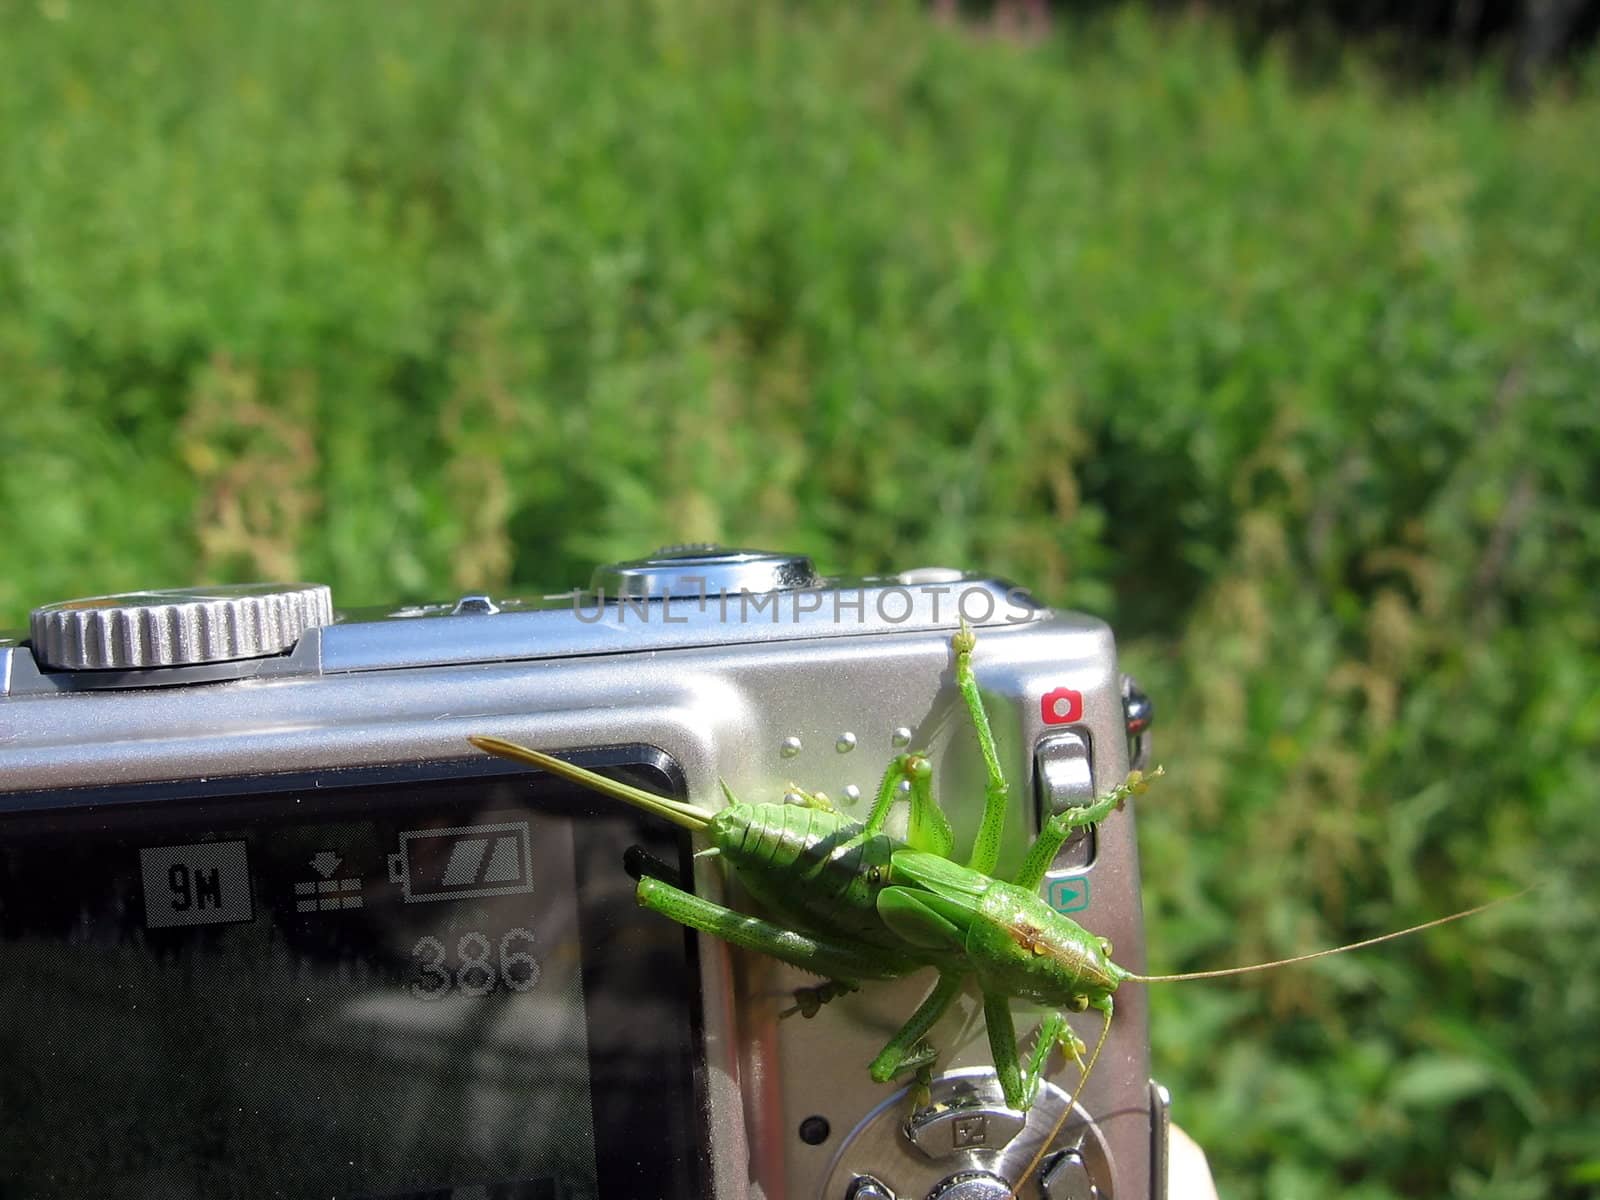 Grasshopper on the camera by tomatto